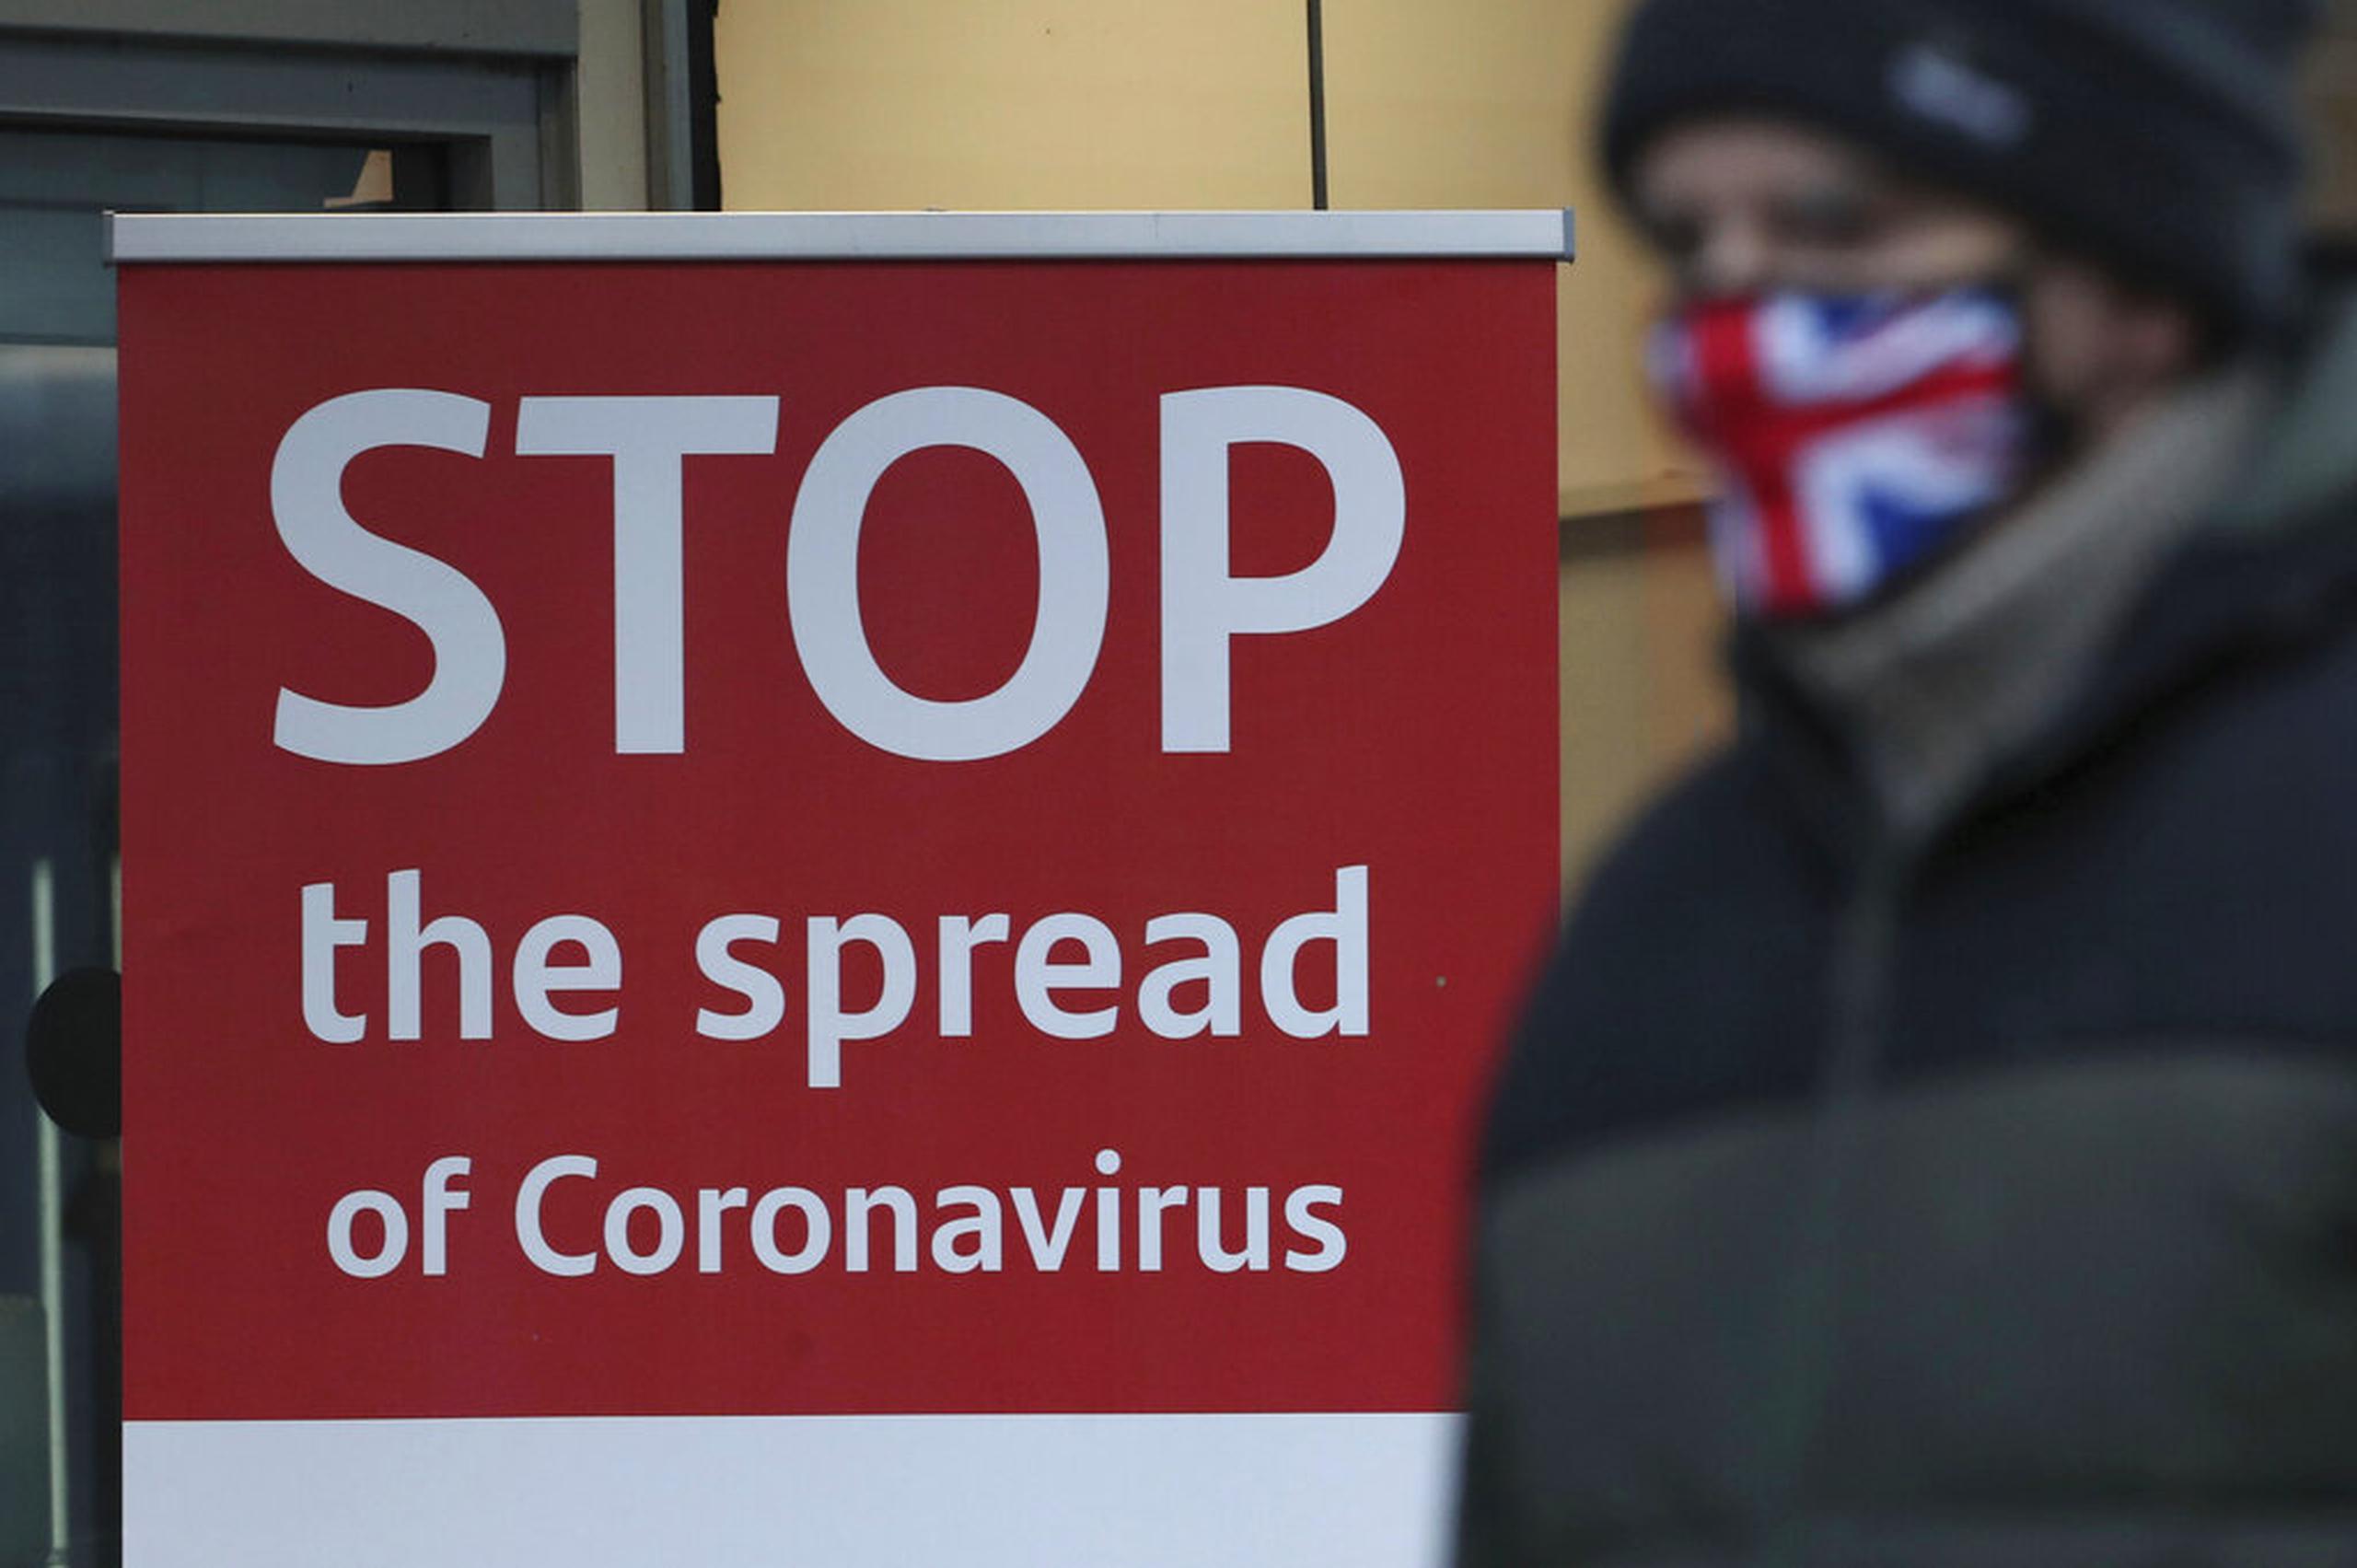 Gran Bretaña es uno de los países más golpeados por la pandemia en Europa, con más de 75,000 decesos relacionados con el virus.